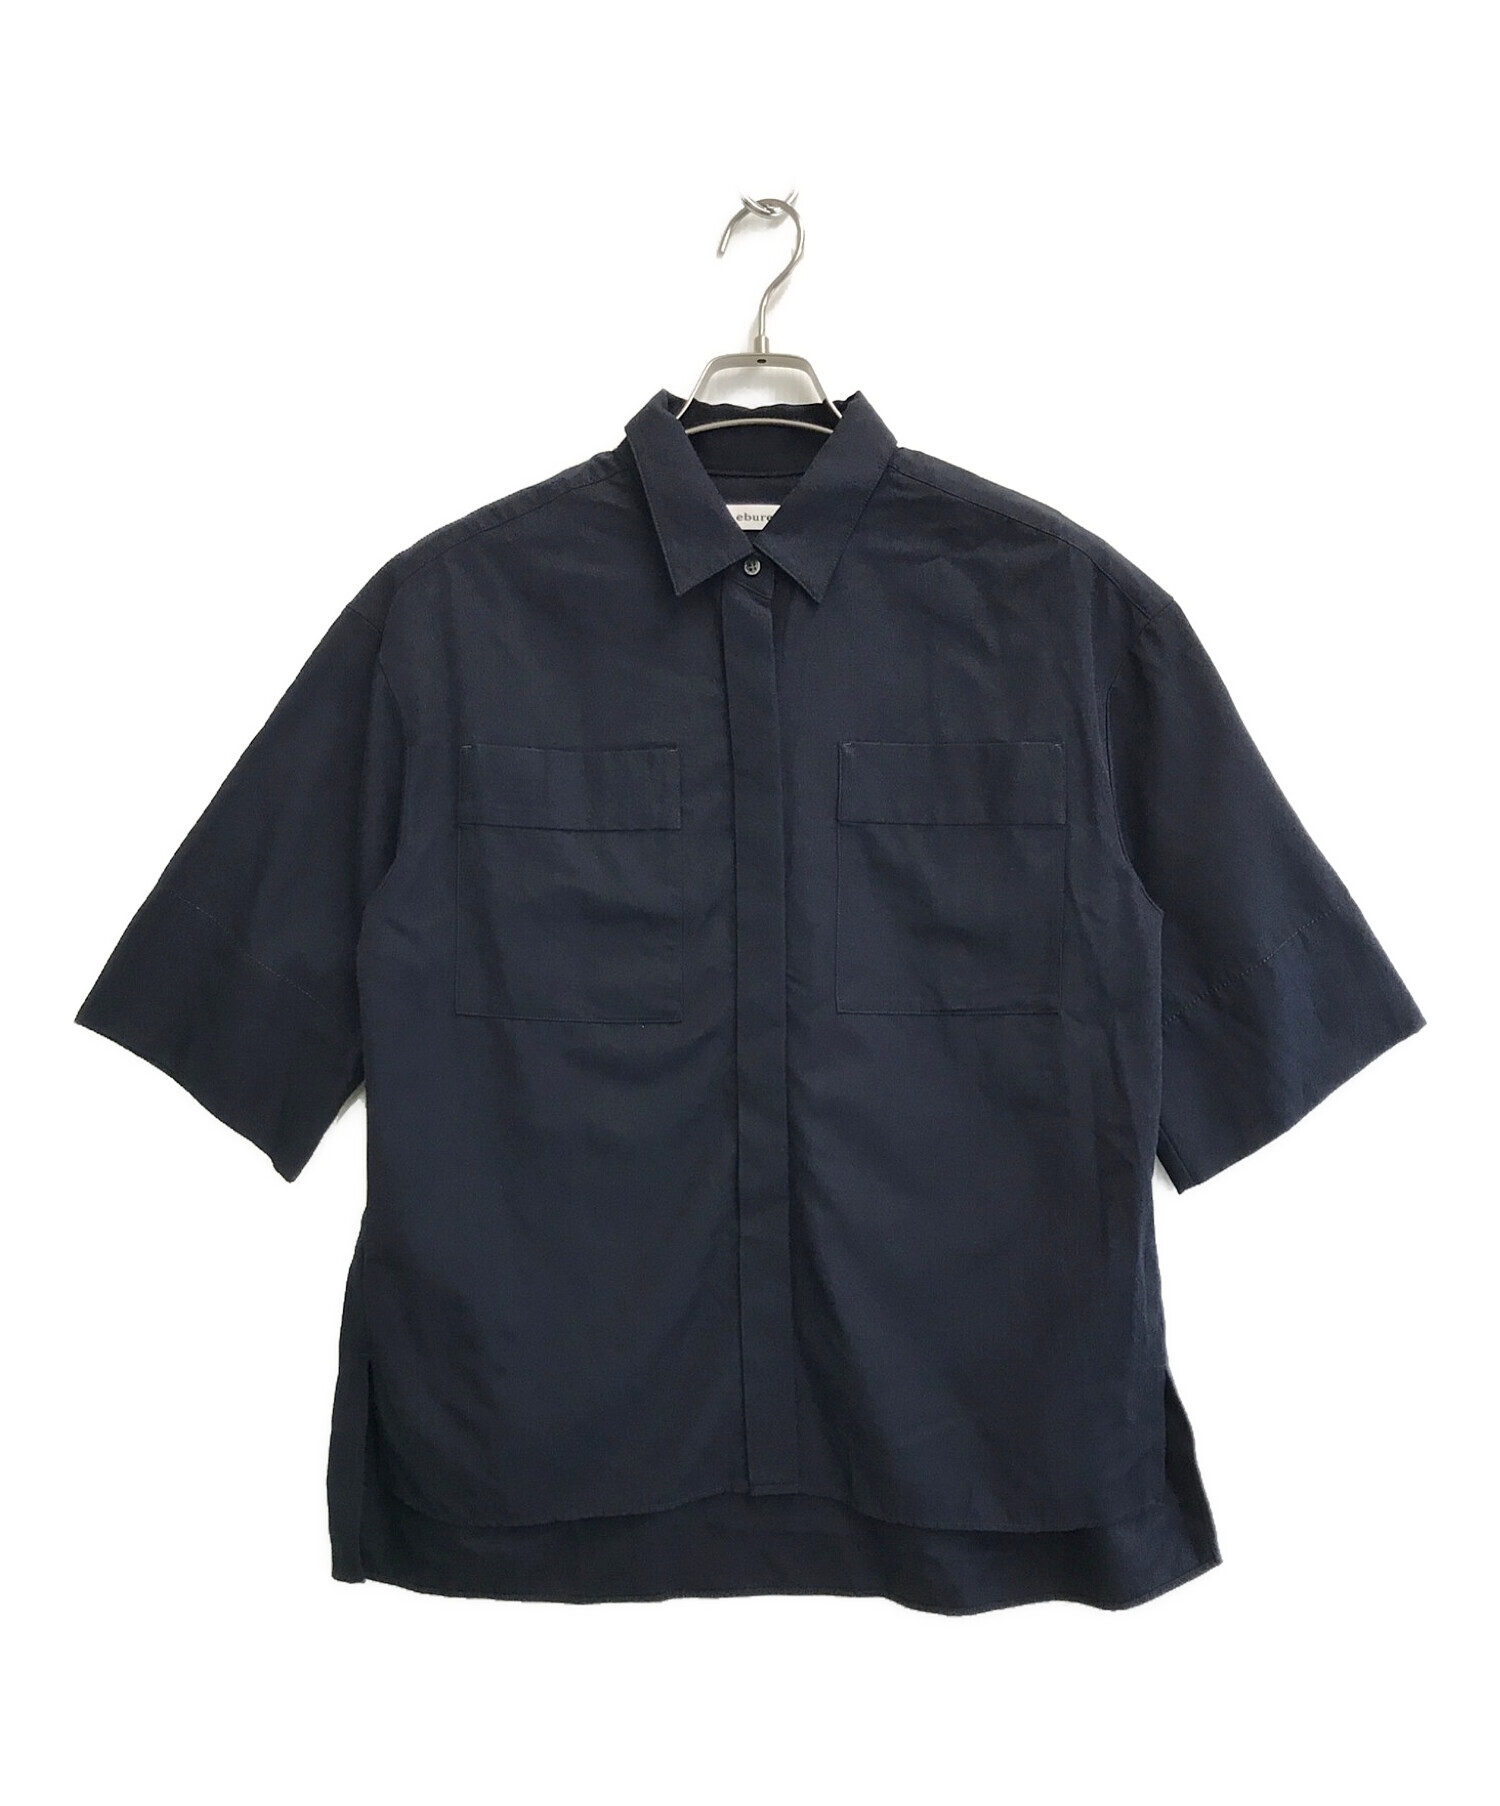 ebure (エブール) 半袖シャツ ネイビー サイズ:SIZE 38